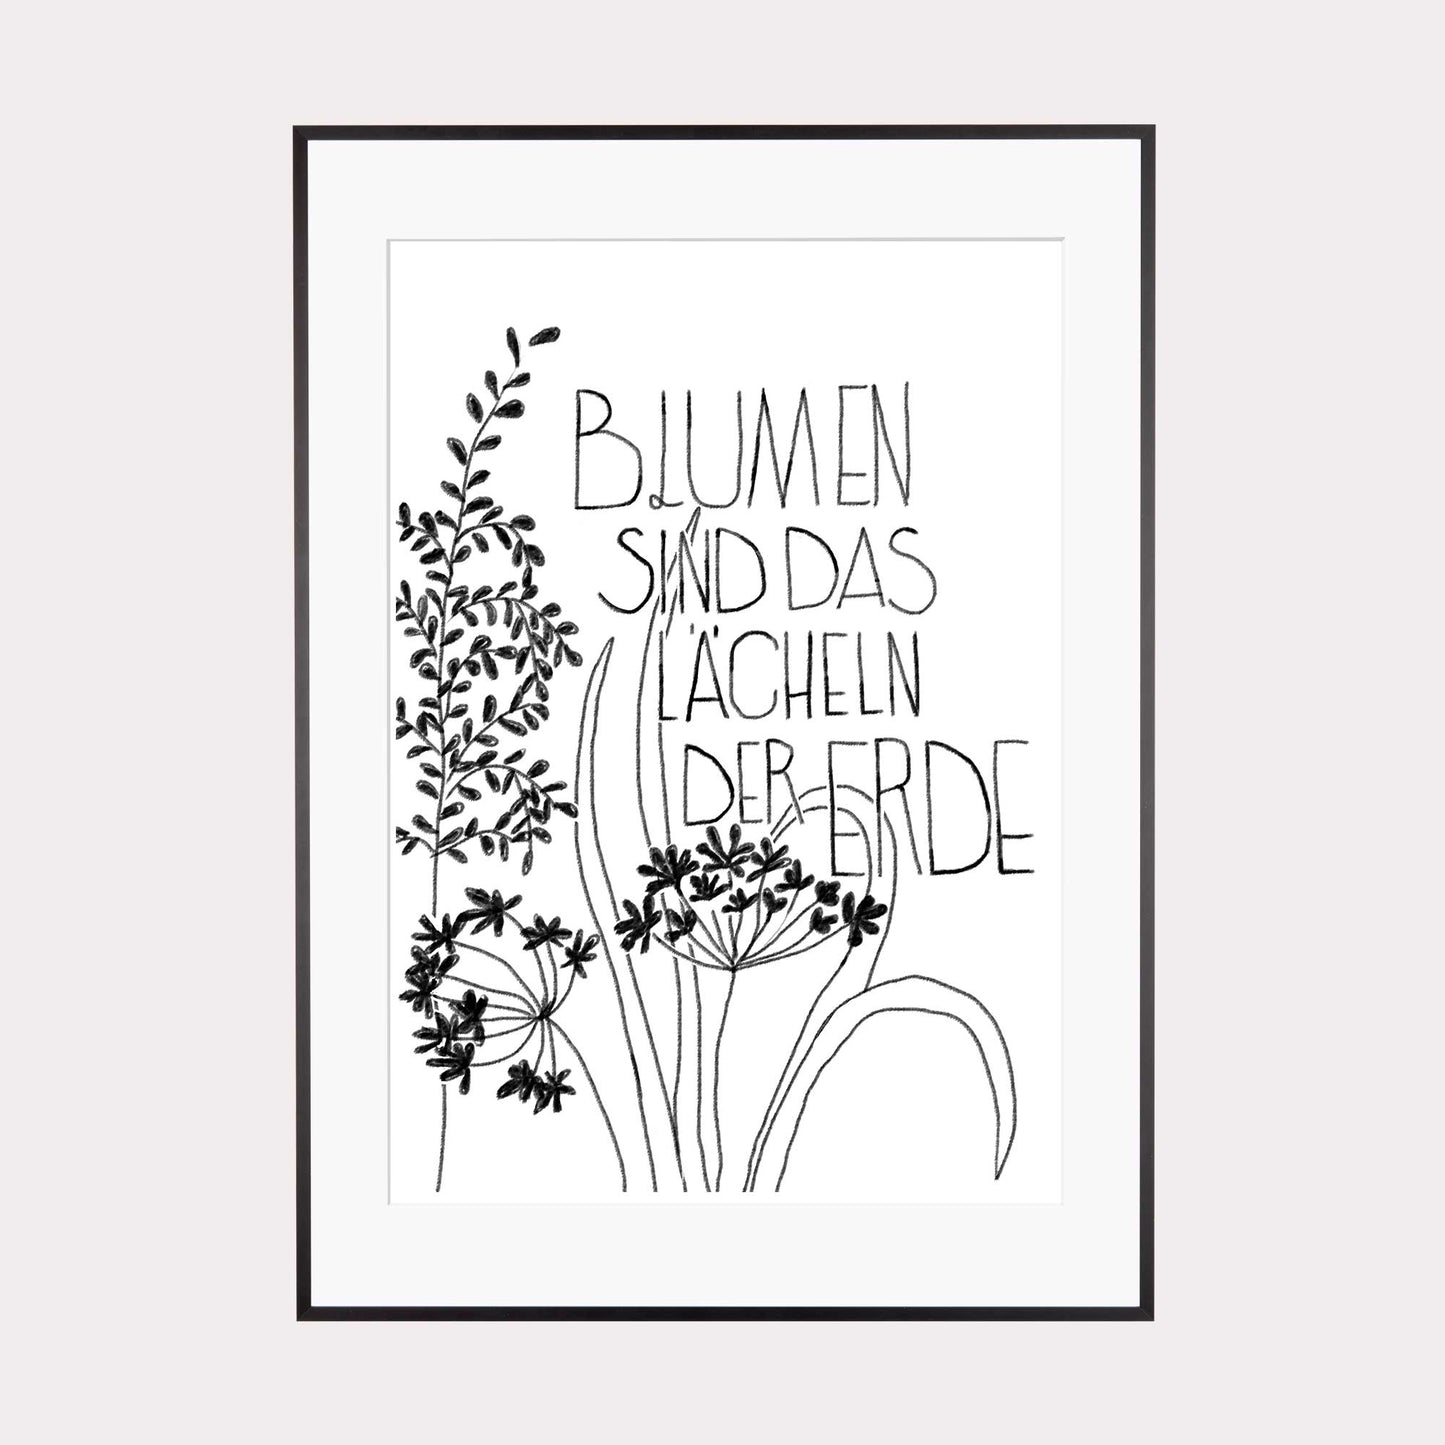 Illustration |  Blumen sind das Lächeln der Erde